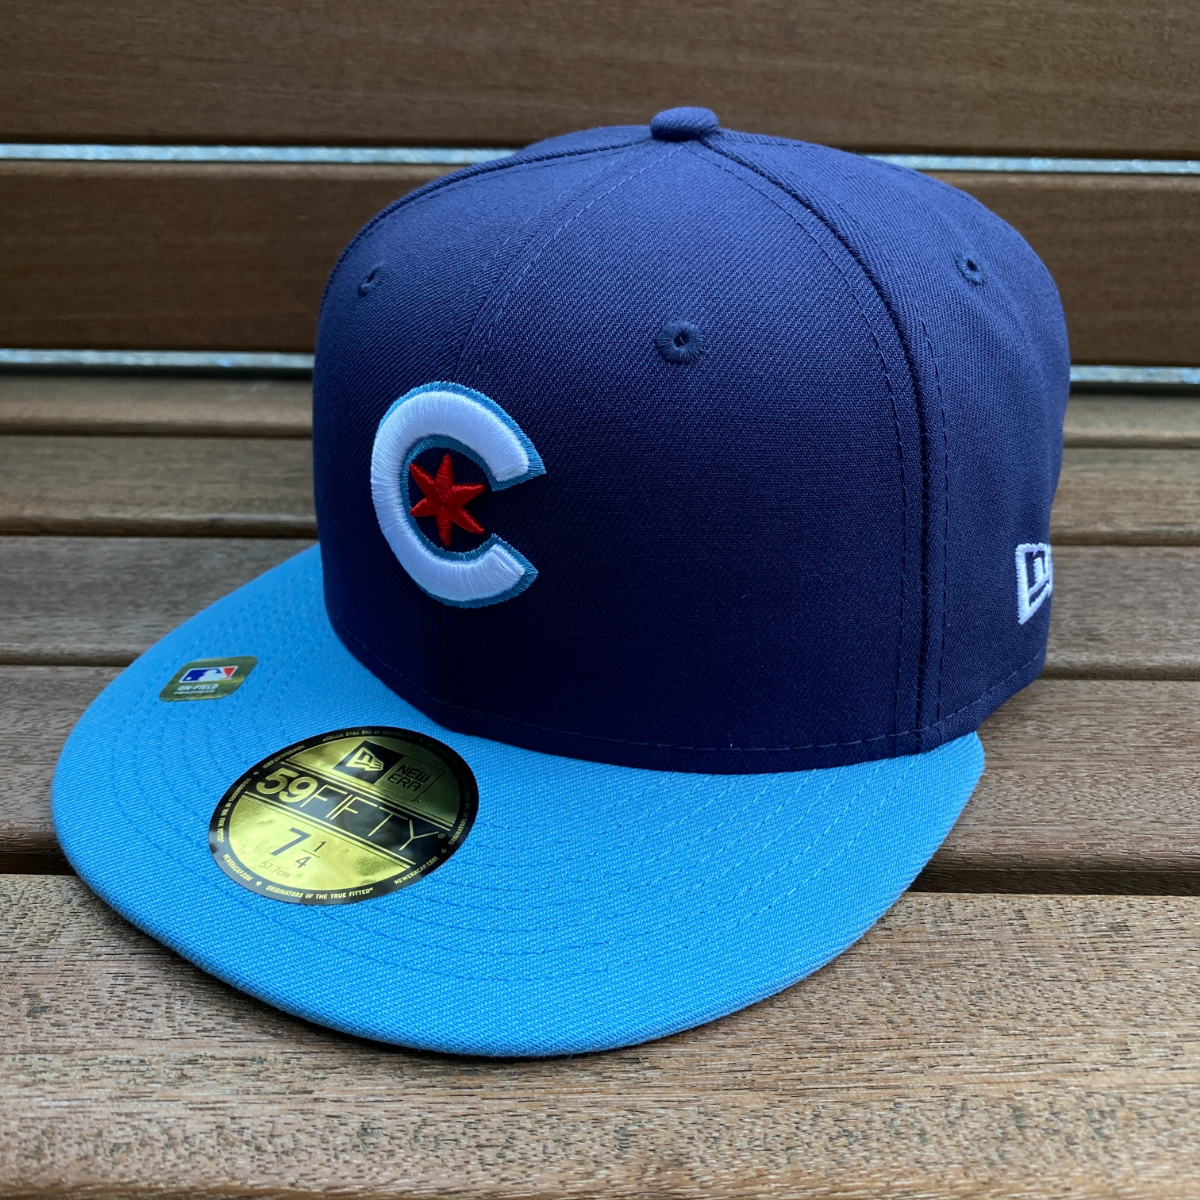 【特価】 限定モデル 【7.5/8】 NEWERA ニューエラ MLB シカゴ カブス Chicago Cubs シティコネクト City Connect 59FIFTY 米国正規品 メジャー ニューエラ